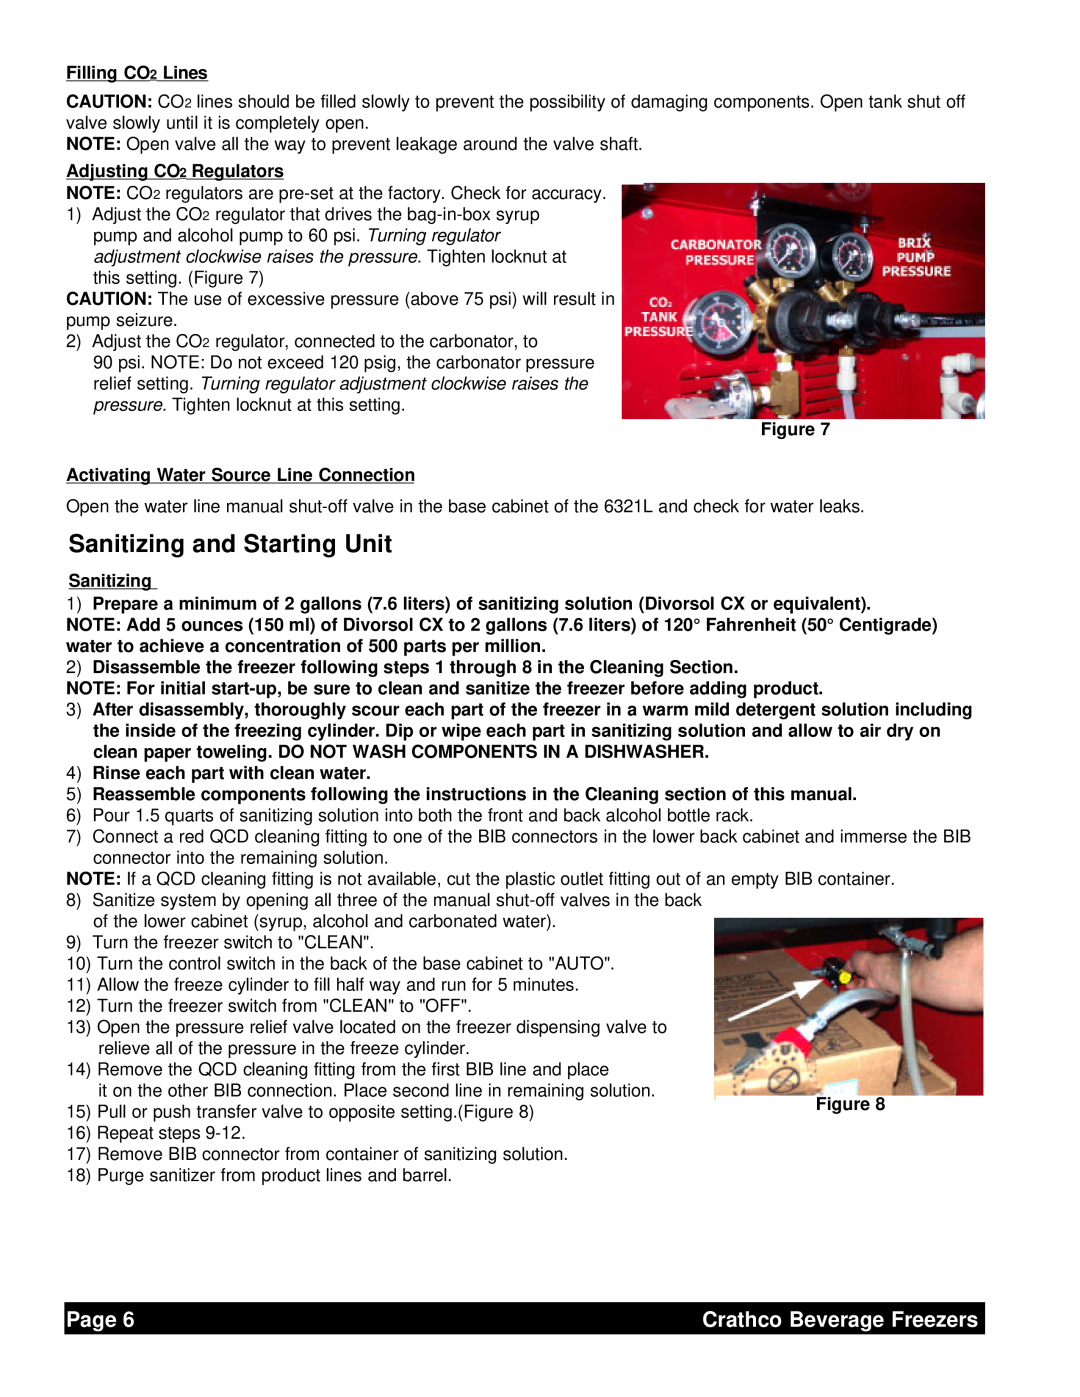 Grindmaster 6321L service manual Sanitizing and Starting Unit, Filling CO2 Lines, Adjusting CO2 Regulators, Page 